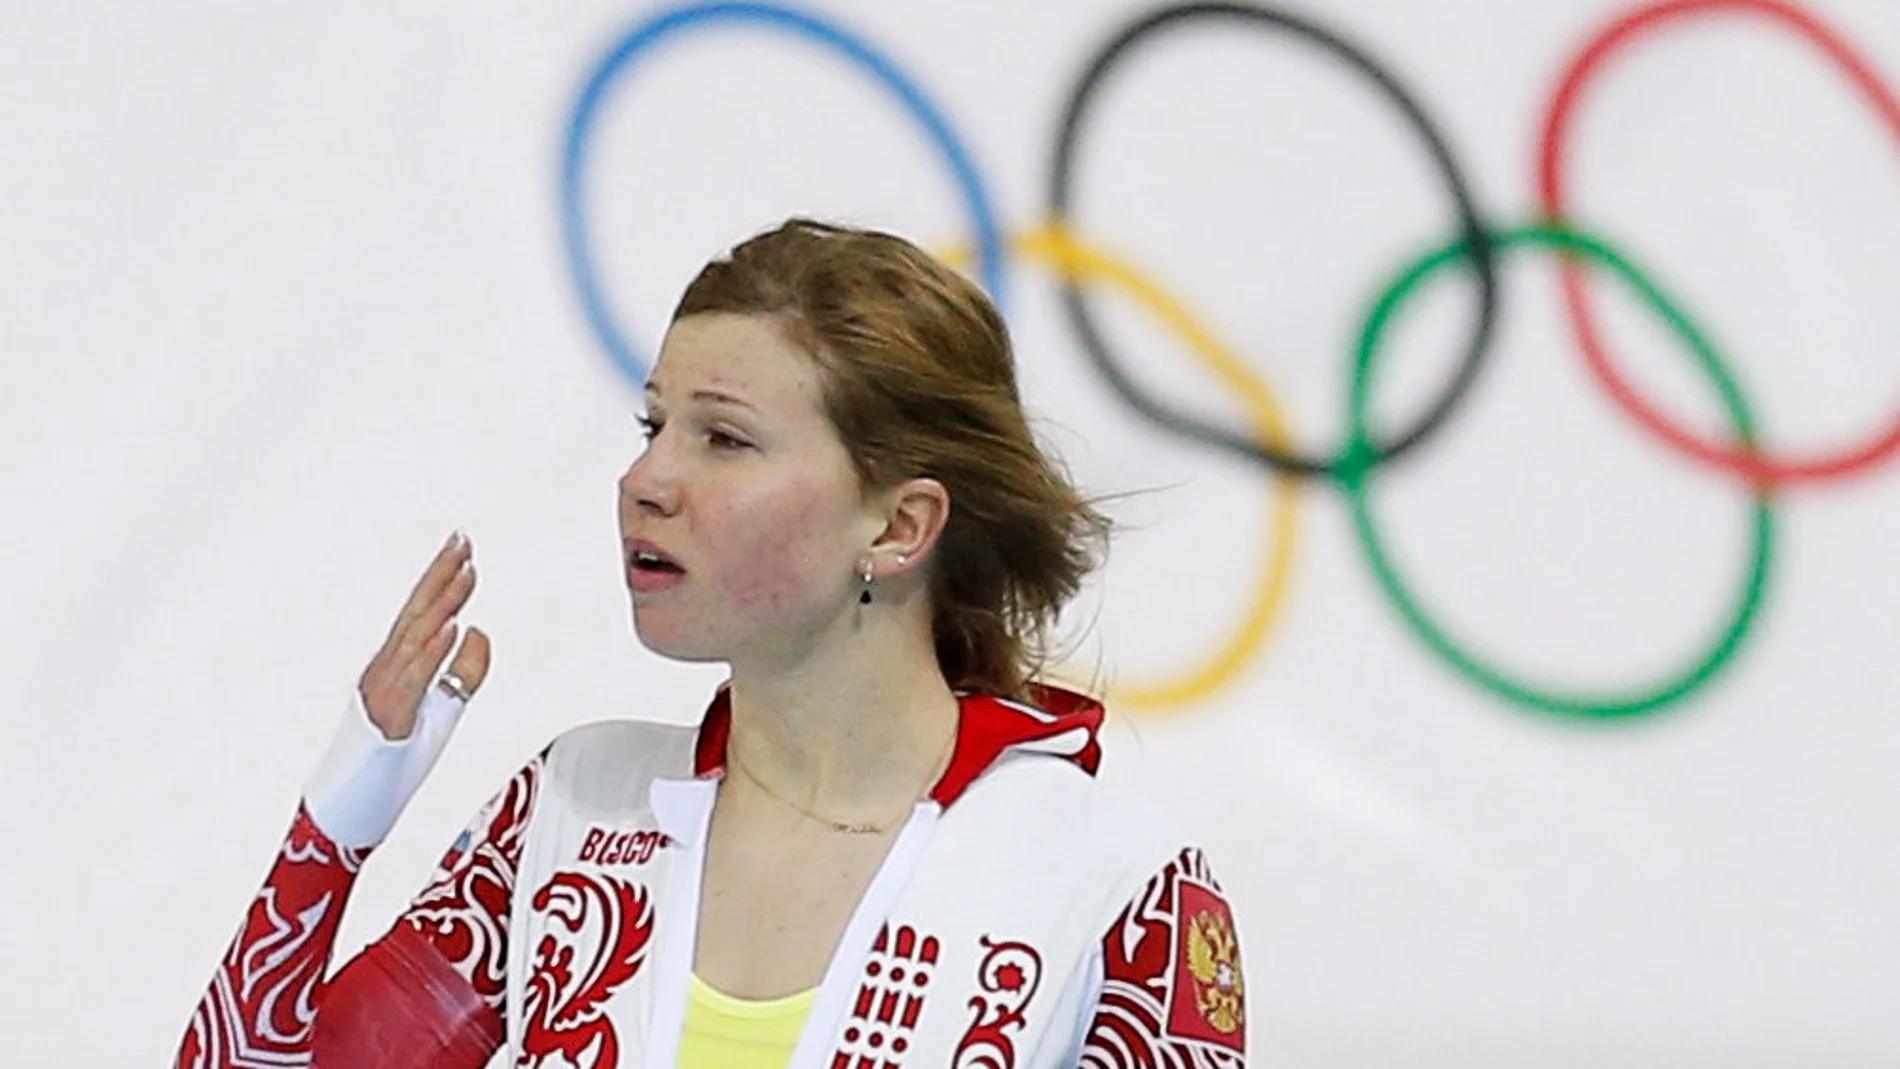 La lista incluye a campeones o subcampeones olímpicos como Olga Fatkulina (patinaje)